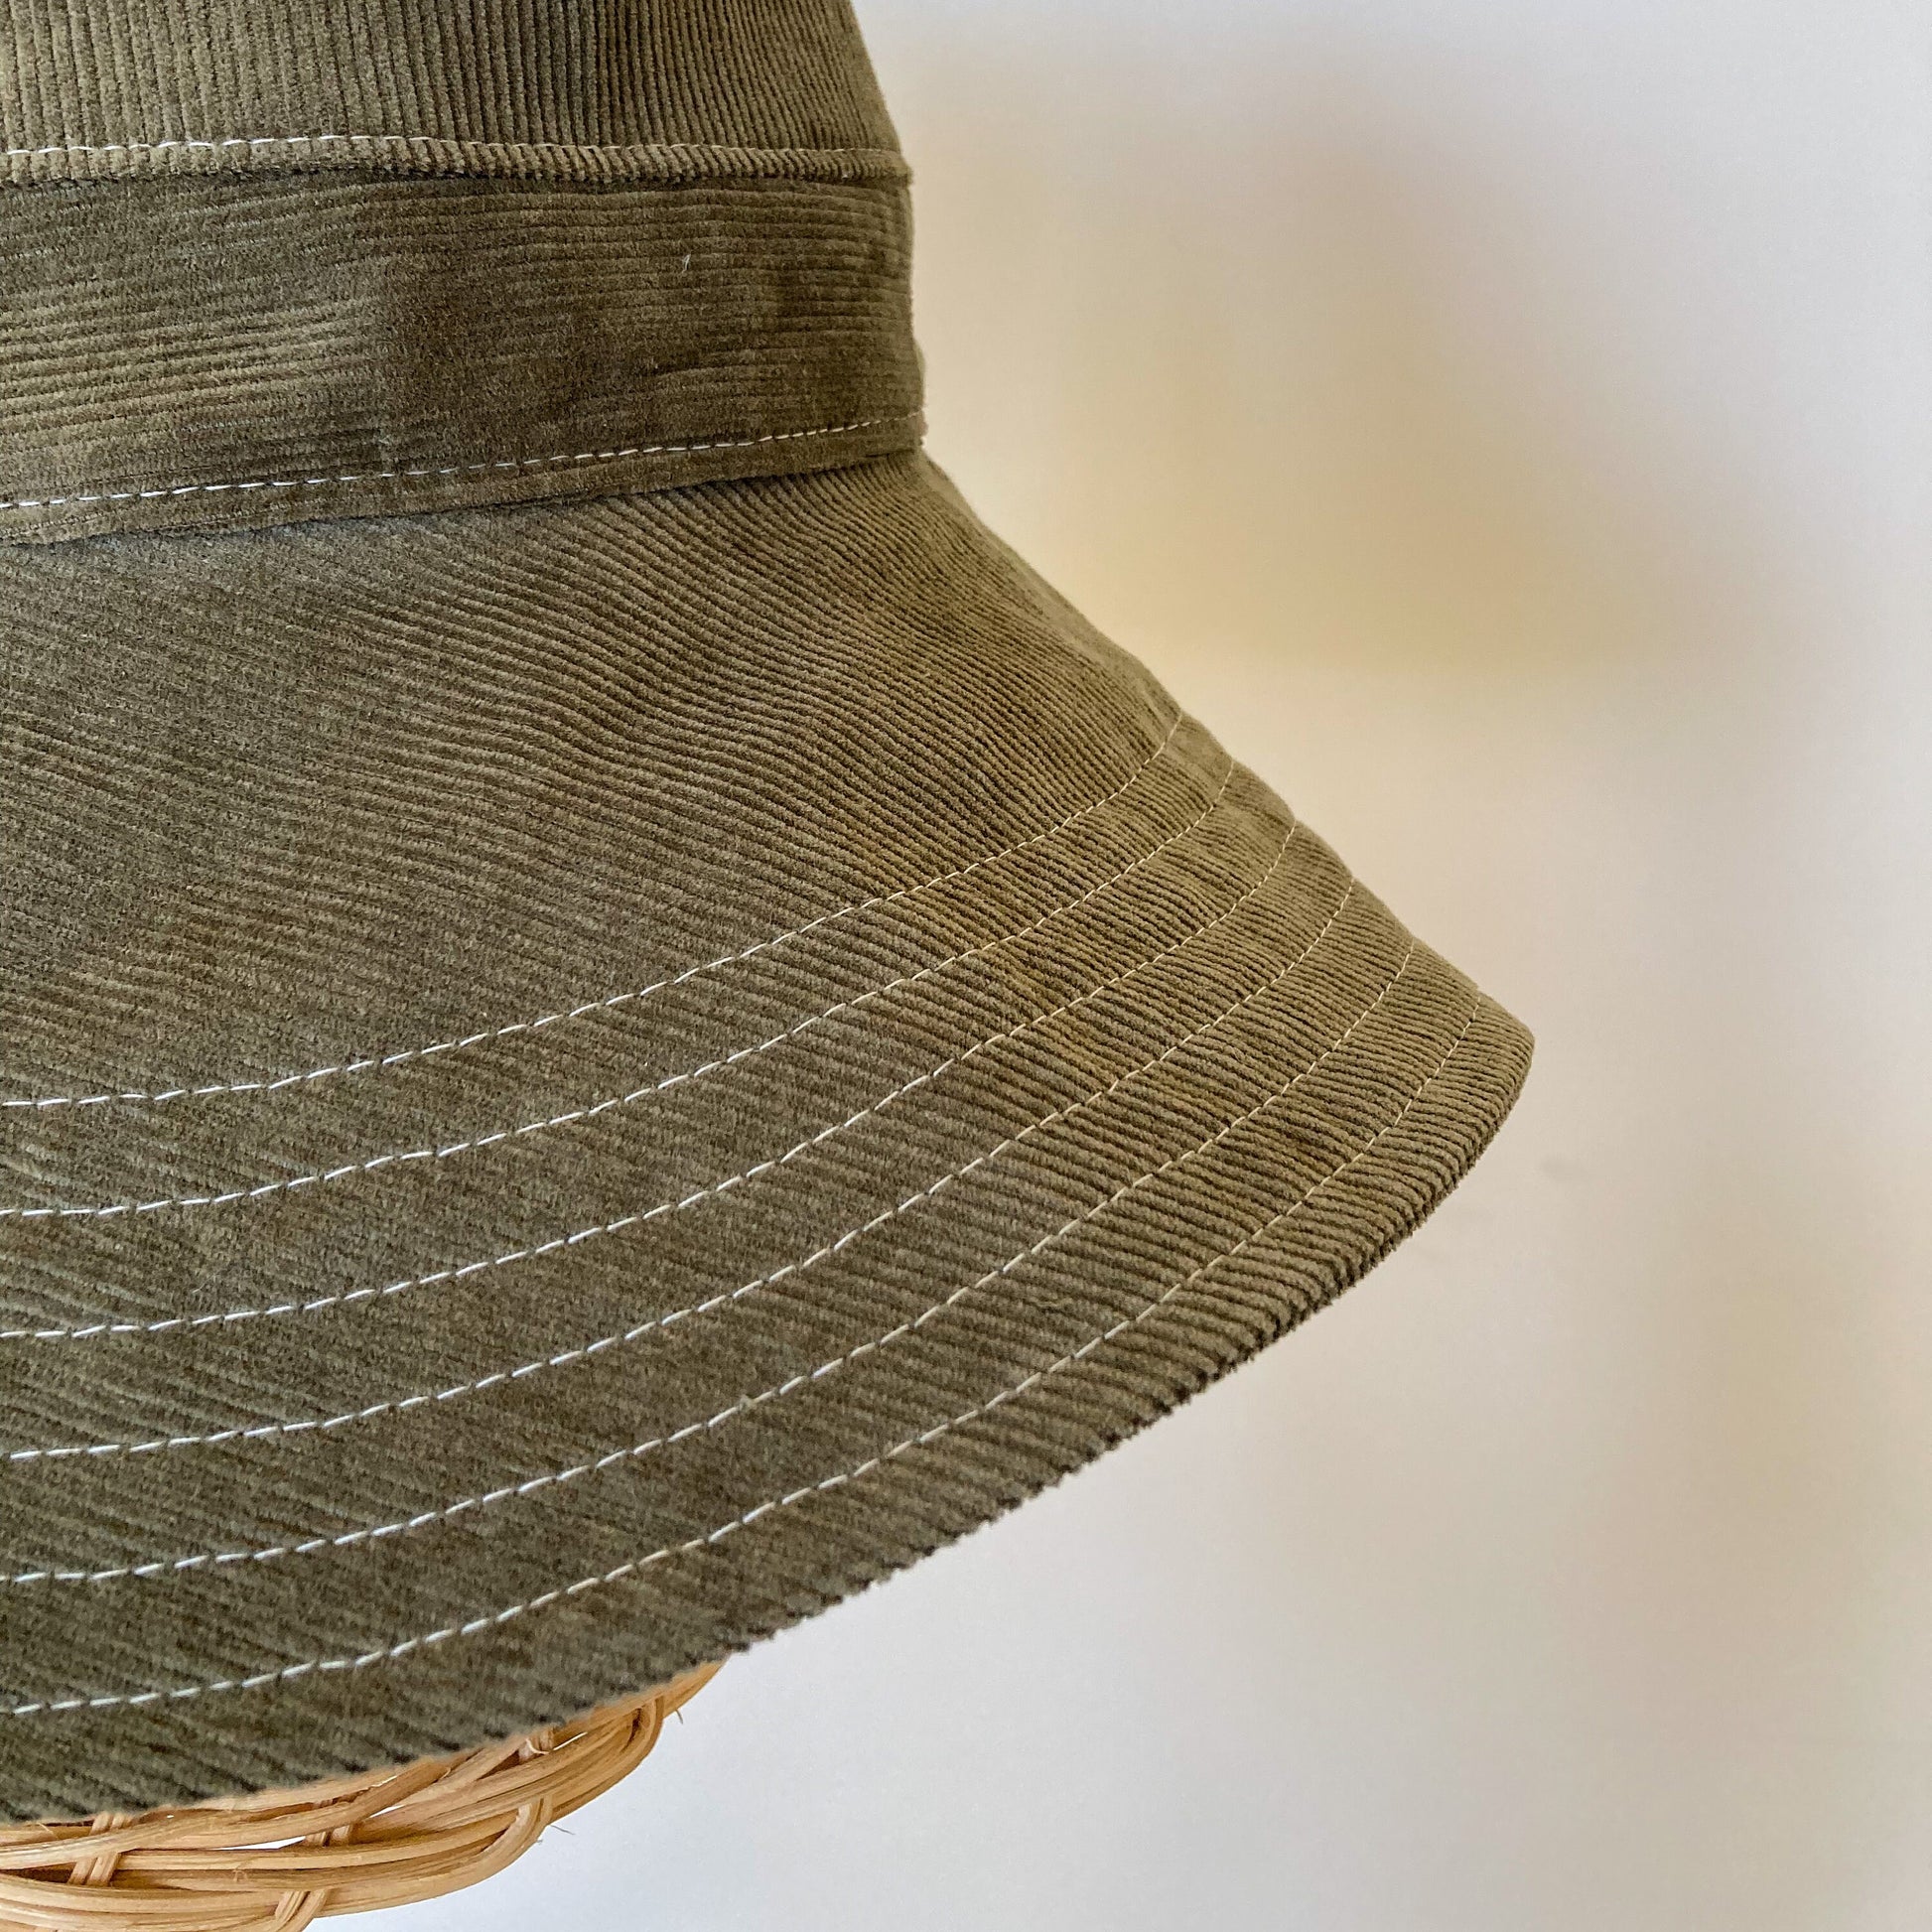 Summer Bucket Hat, Olive Green Hat, Corduroy Hat, Wide Brim Sun Hat, Beach Bucket Hat, Cotton Summer Hat, Green Bucket Hat, Boho Sun Hat